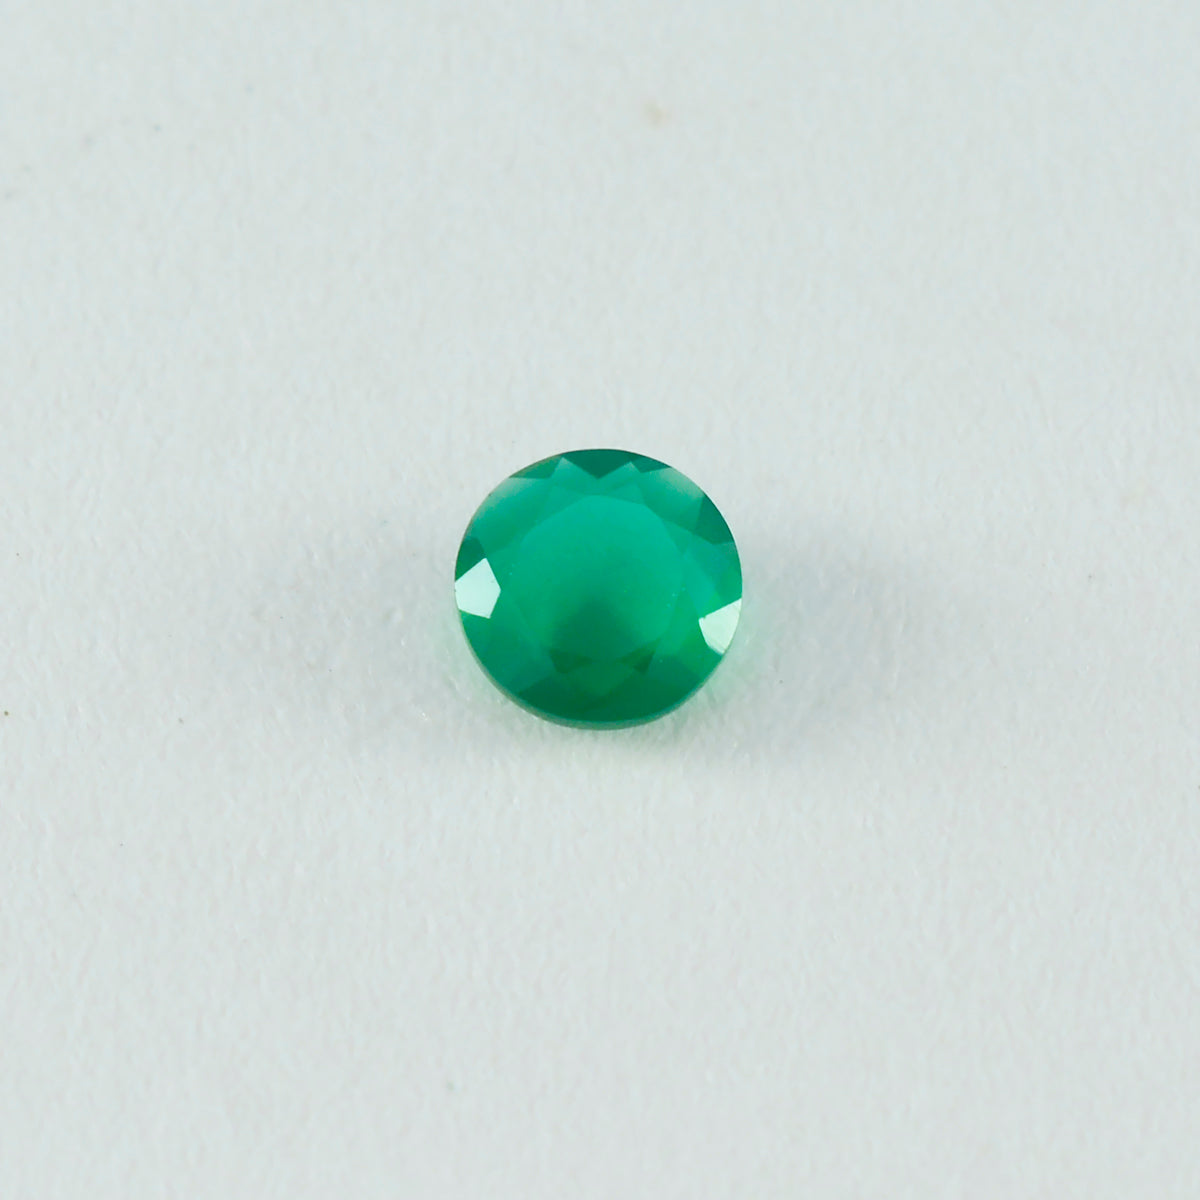 Riyogems 1 pieza de jaspe verde real facetado de 5x5 mm, forma redonda, piedra preciosa de calidad atractiva